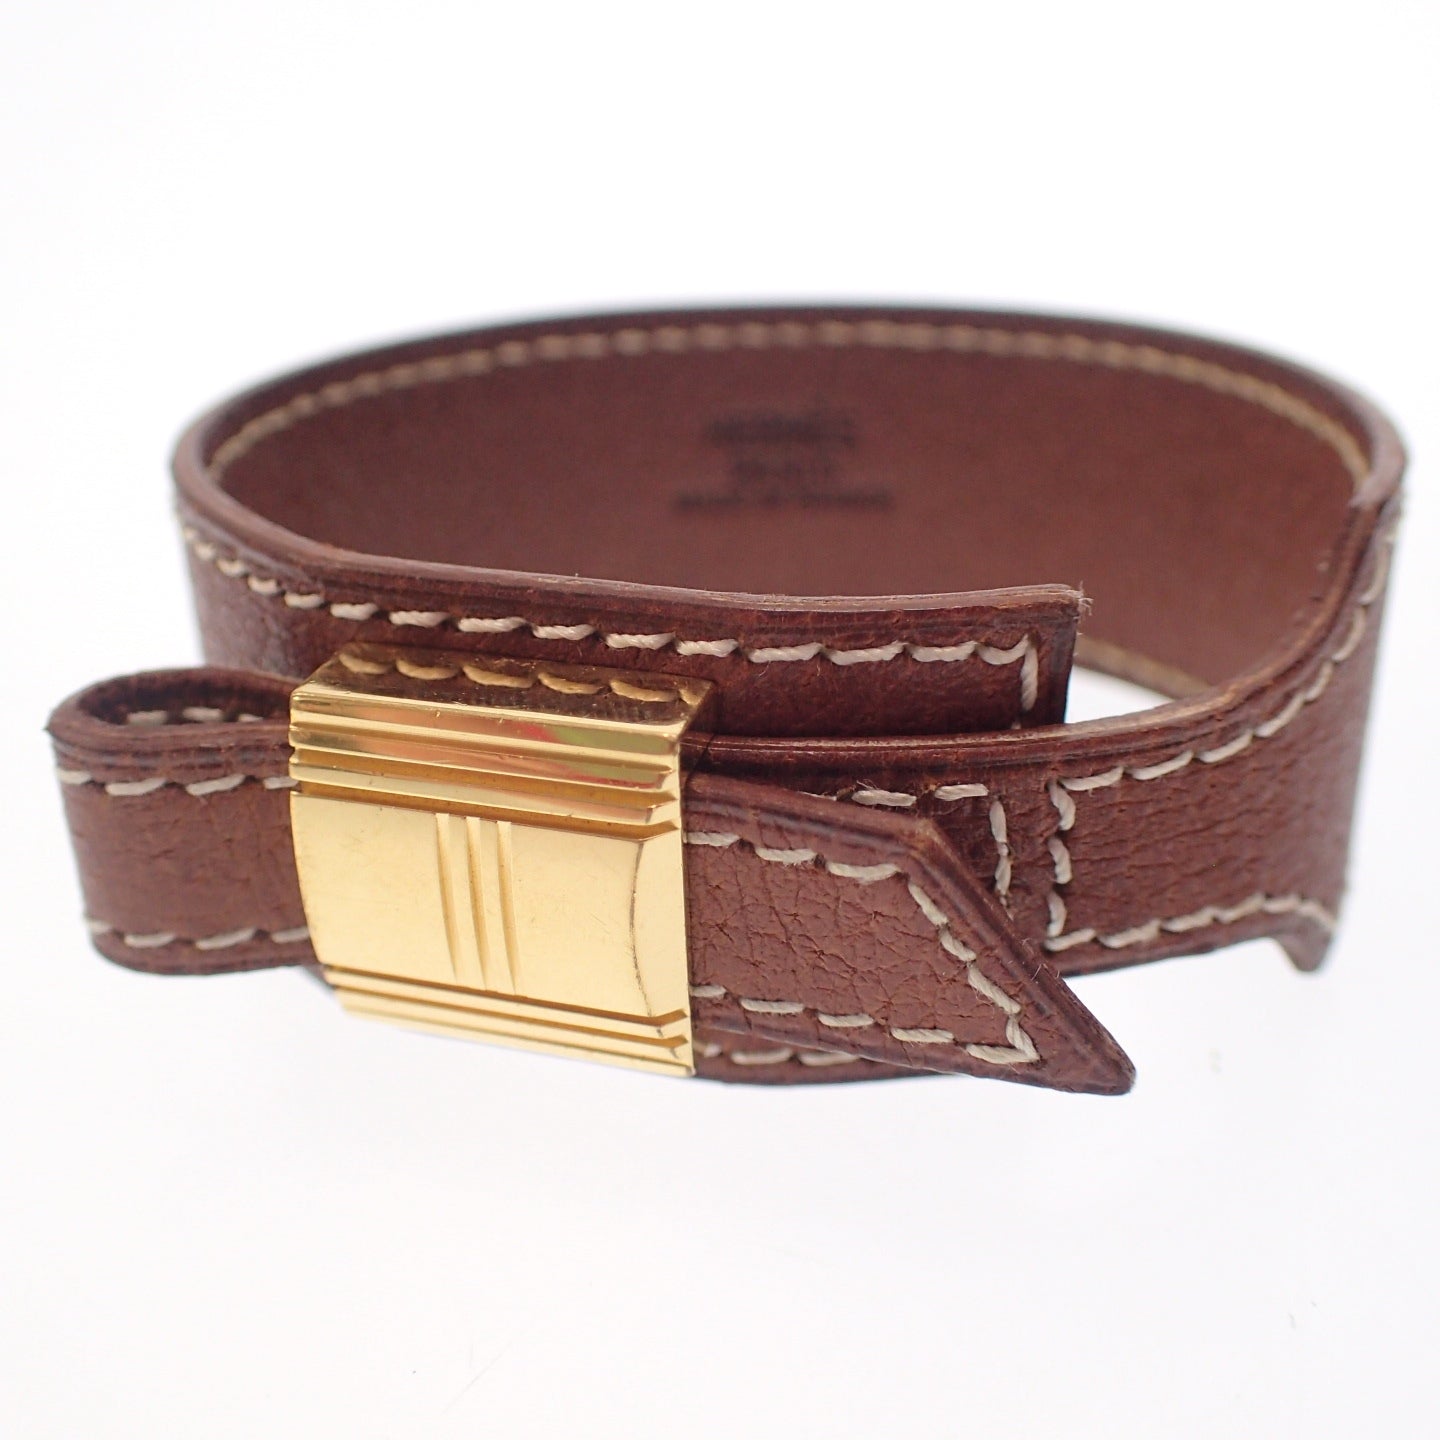 Good condition◆Hermes bracelet Artemis leather gold hardware □E carved M size brown HERMES [AFI12] 